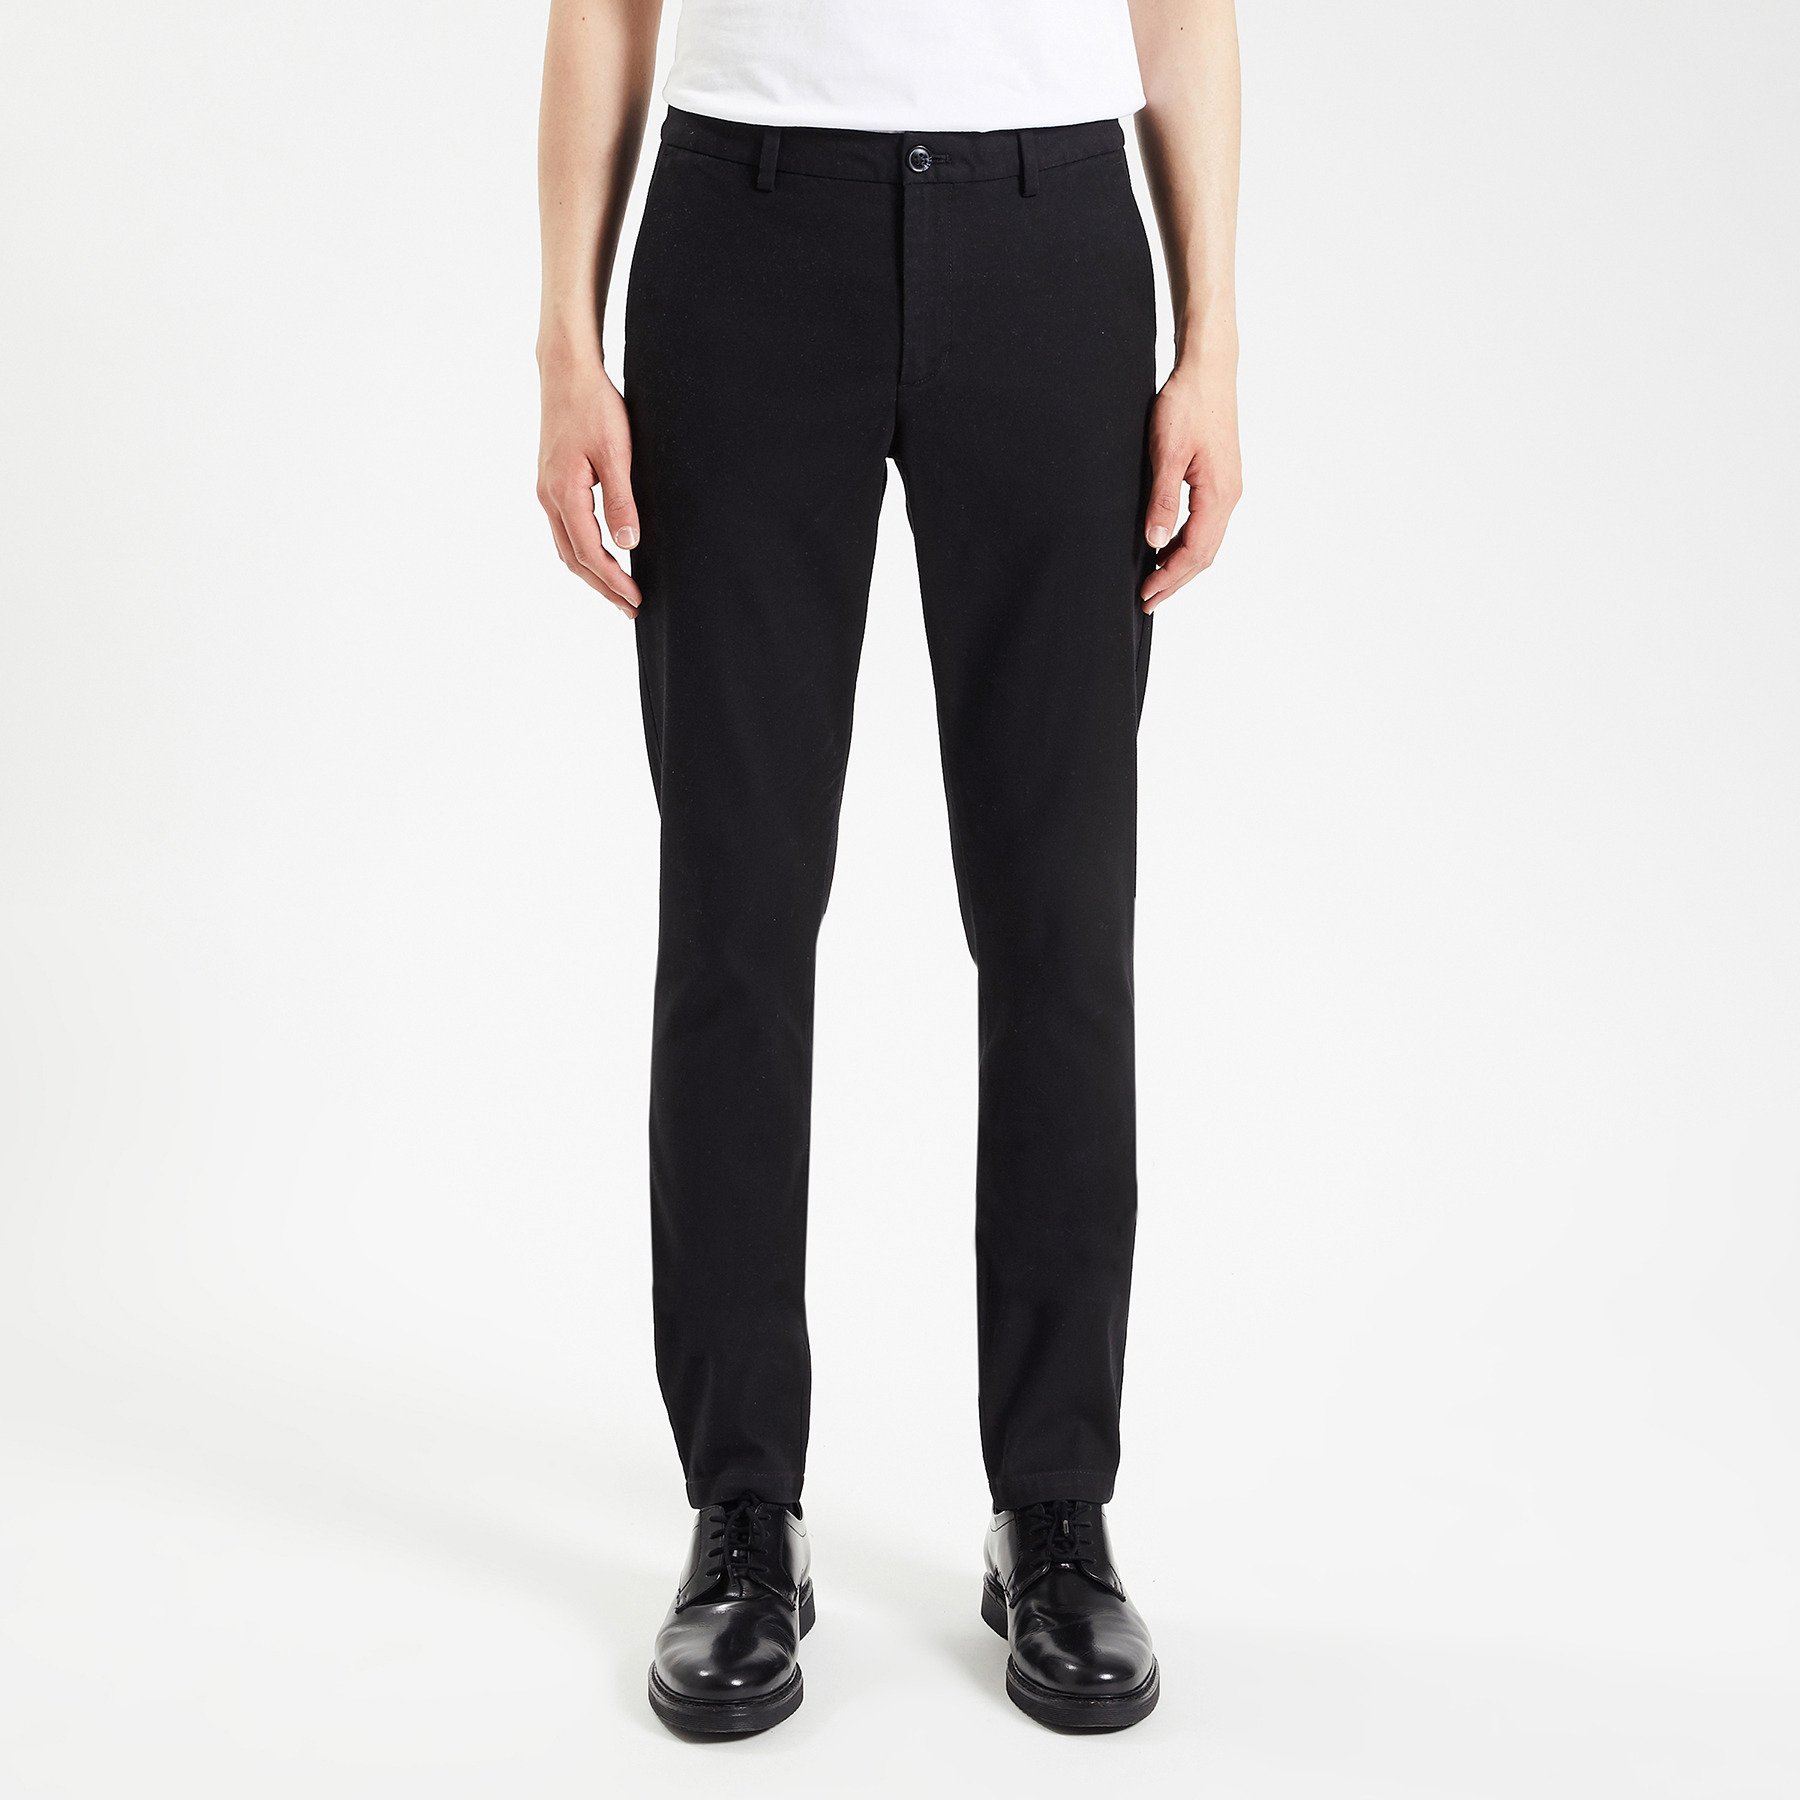 Pantalon chino slim urbain "le parfait by JULES" Noir 34 98% Coton, 2% Elasthanne Homme